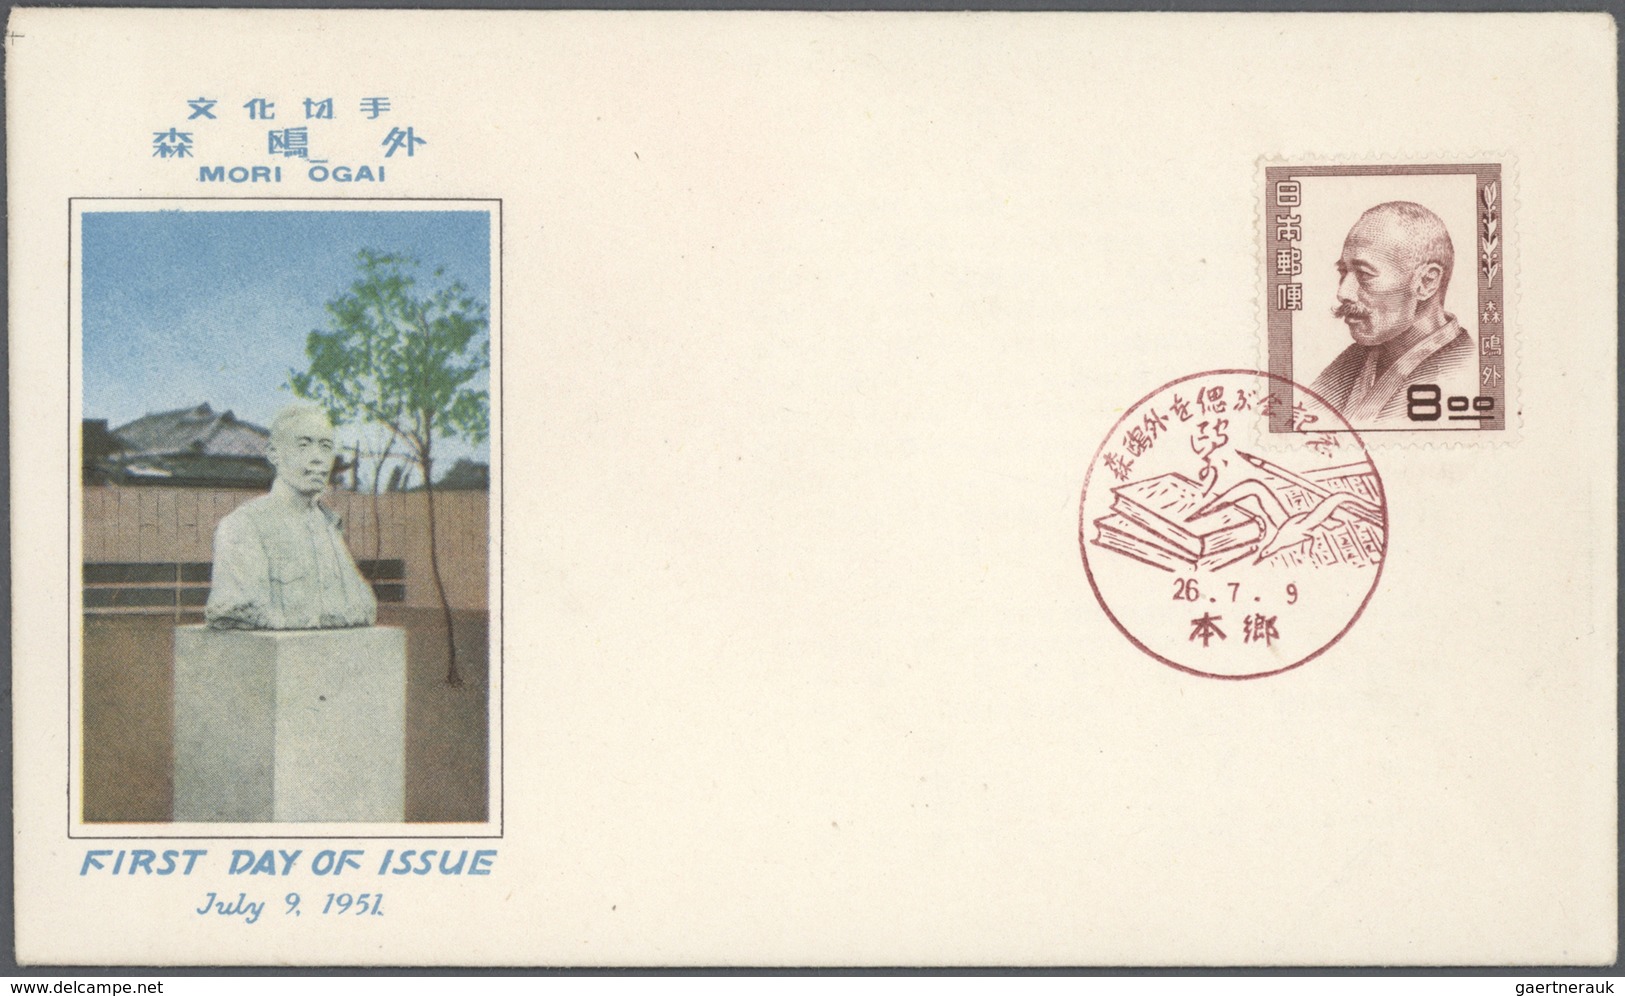 Übersee: 1925/99 (ca.) Briefposten n.A.d.E. ca. 750 Stück Schwerpunkt 1960er/70er, dabei Mongolei-DD